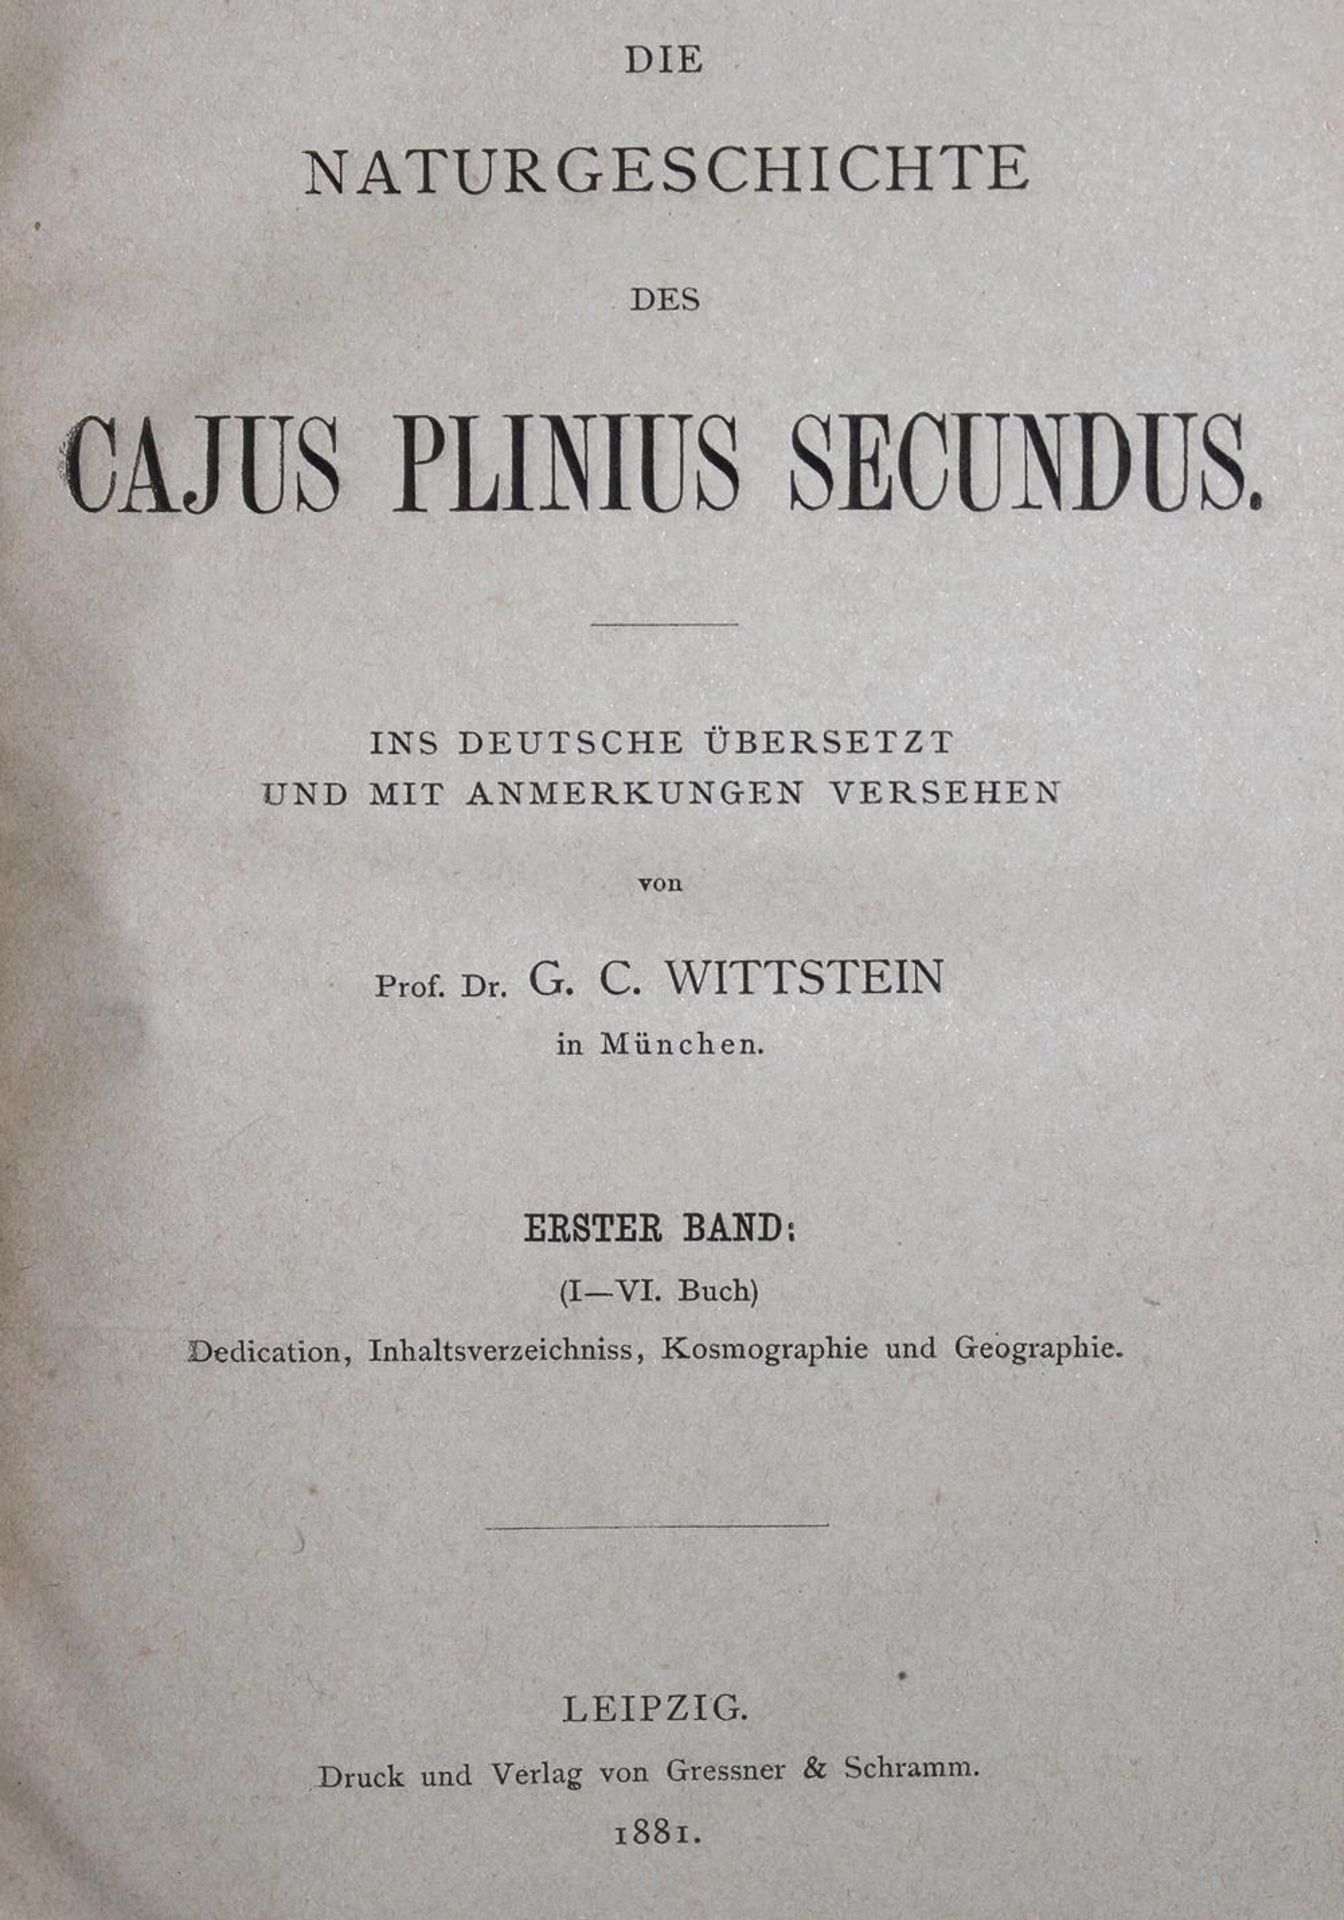 Plinius Secundus major,C.